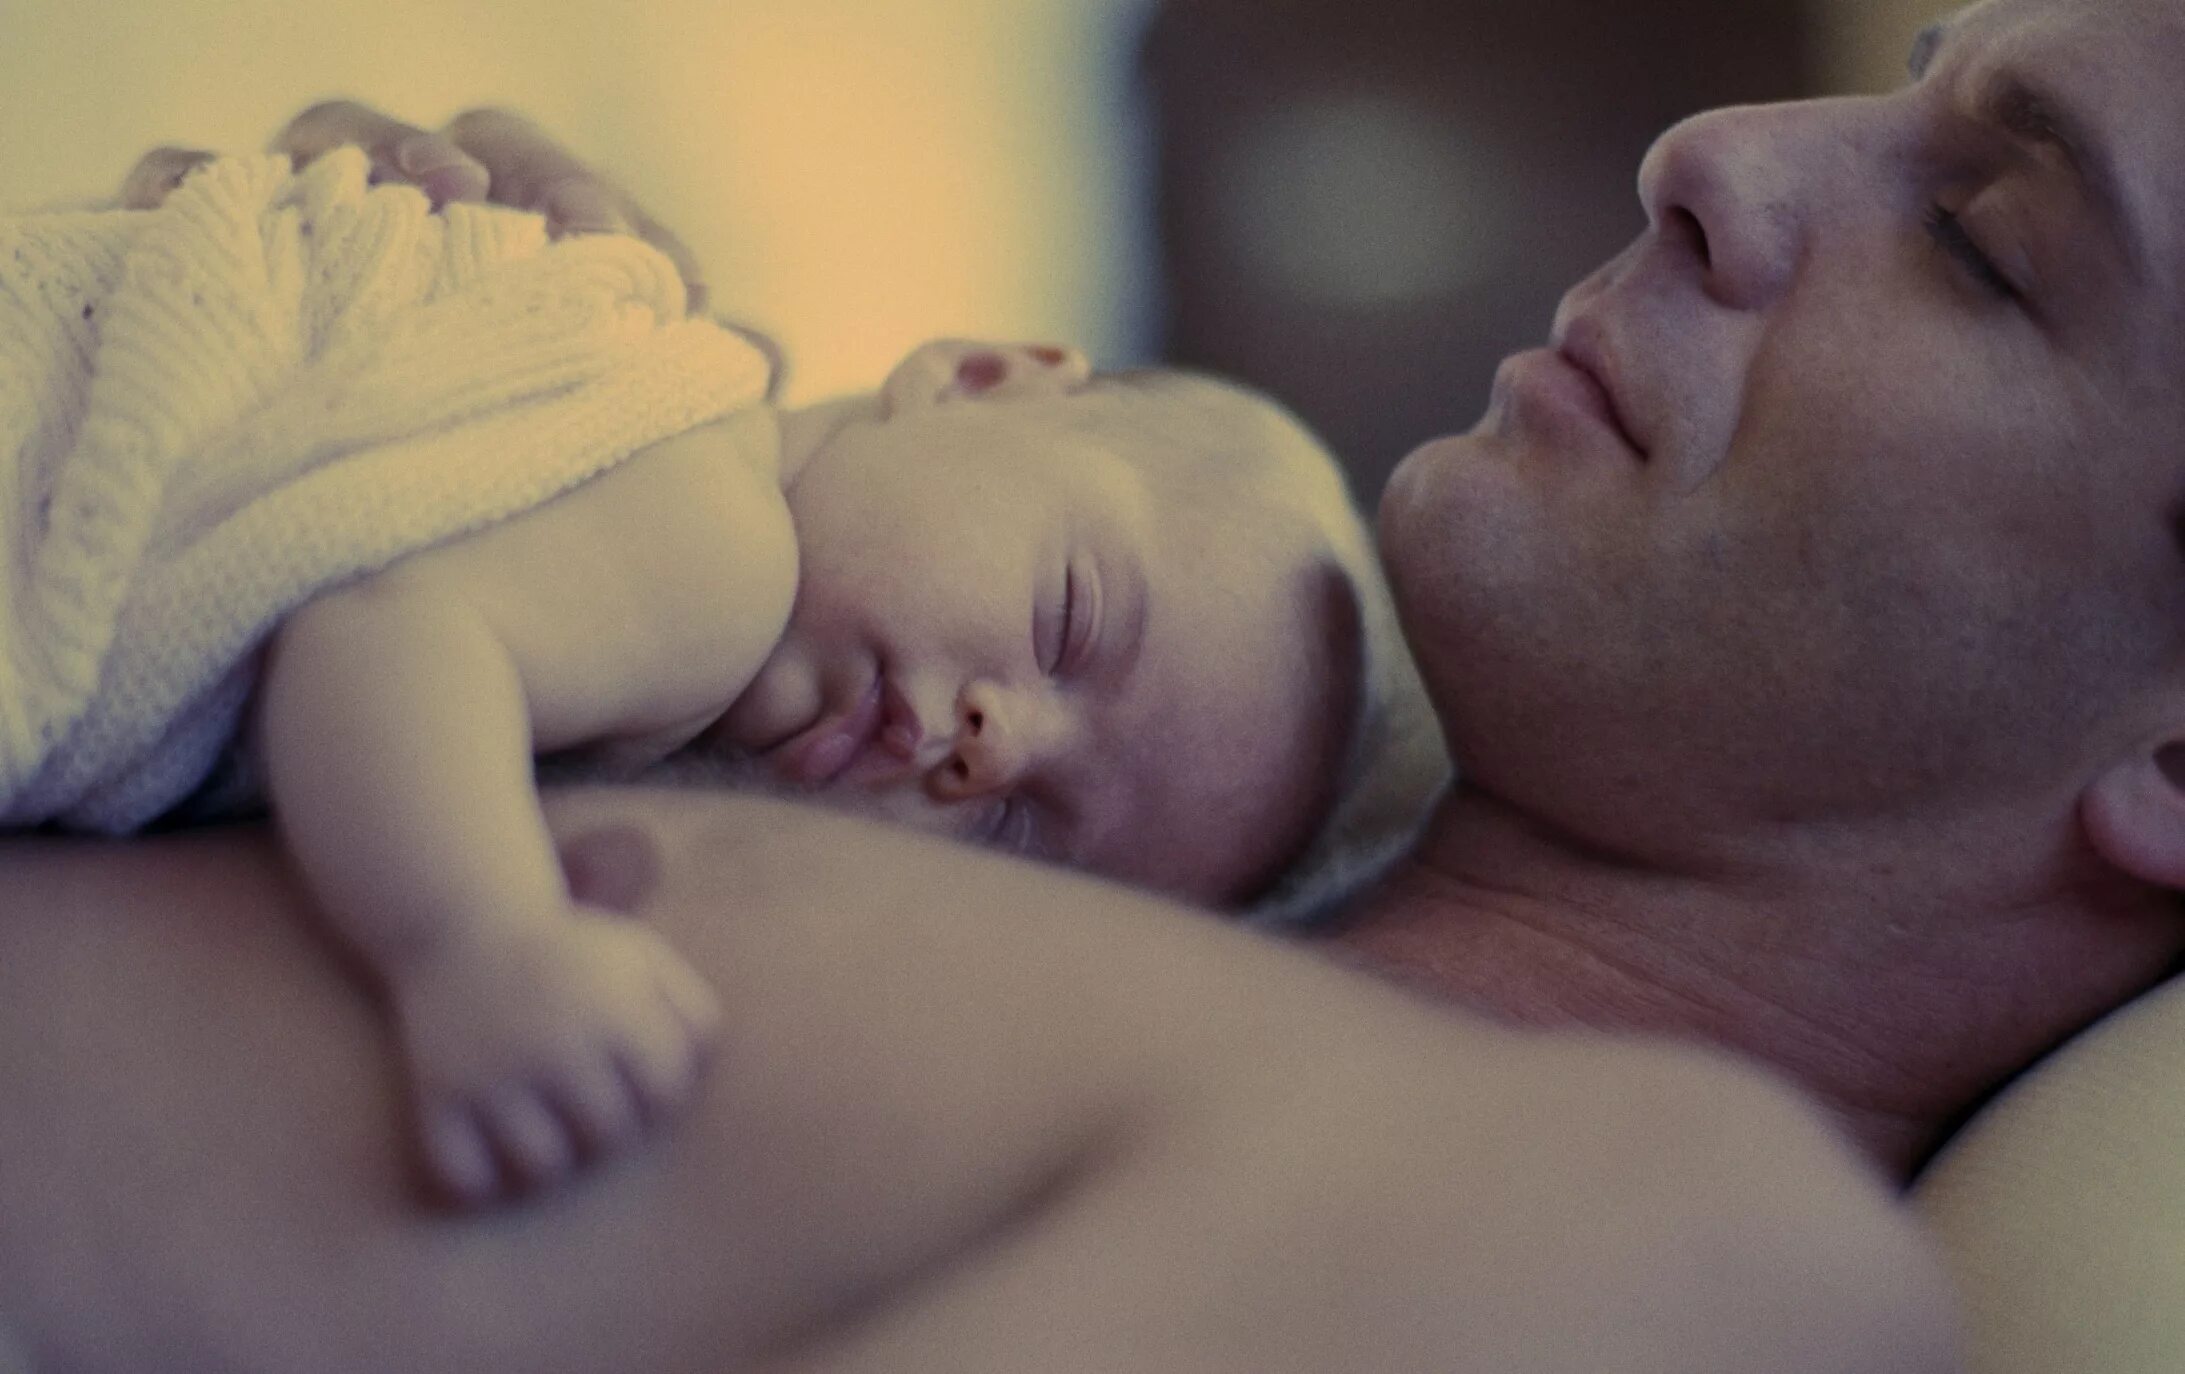 Спящий папа 18. Отец и новорожденный. Папа с новорожденным. Спящий отец и младенец. Отец с младенцем спят.